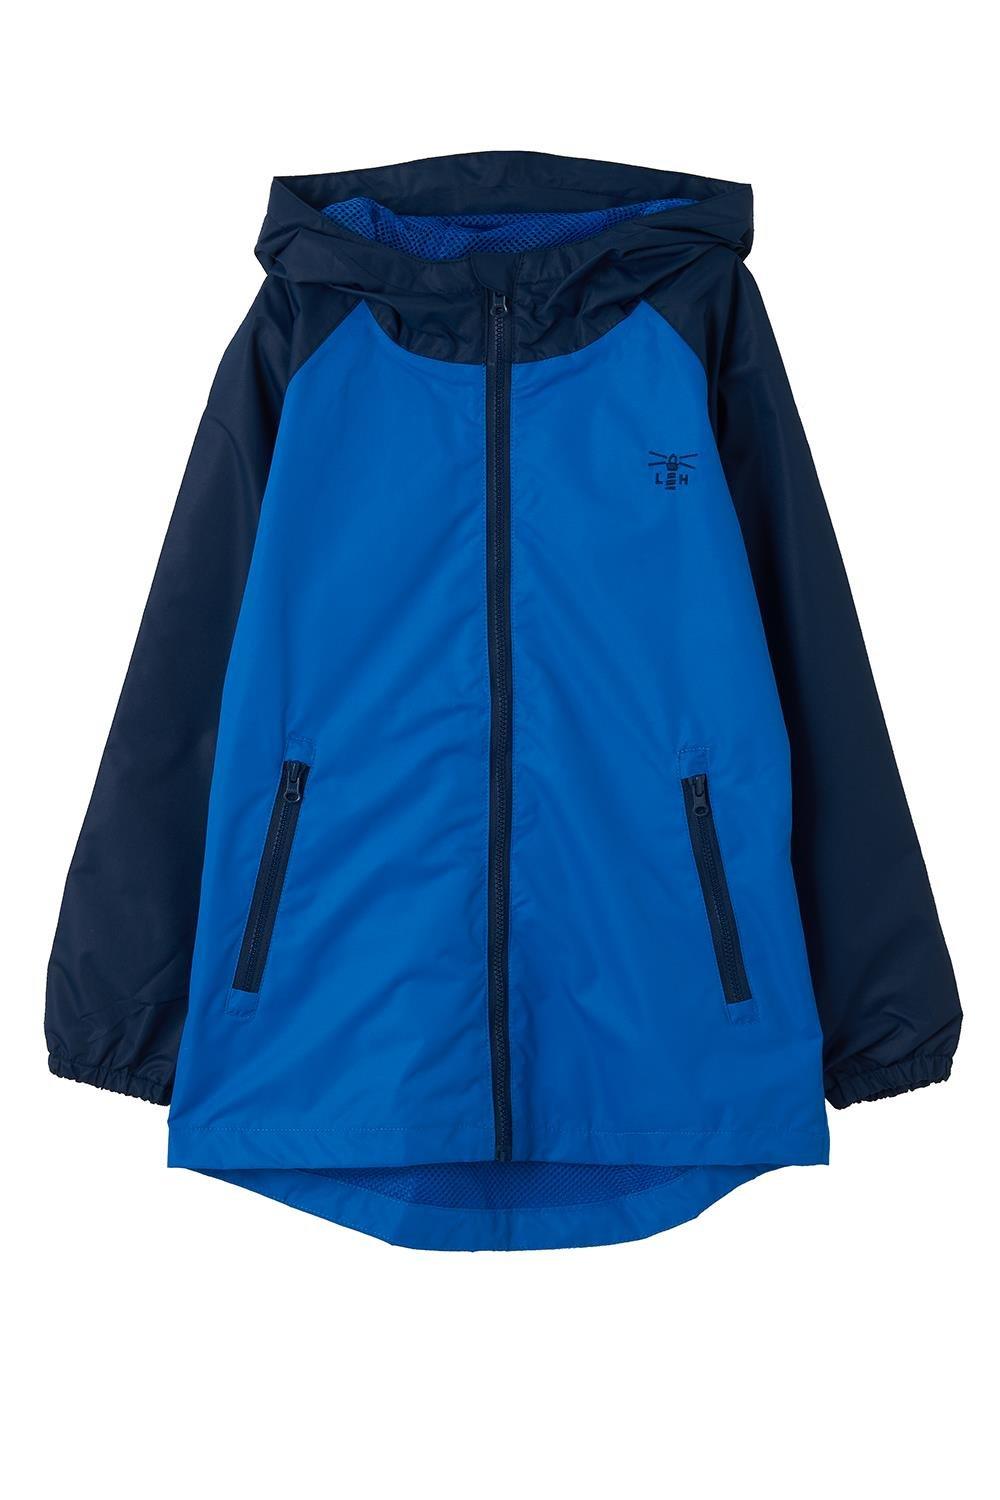 Caleb Jacket Waterproof Breathable Raincoat